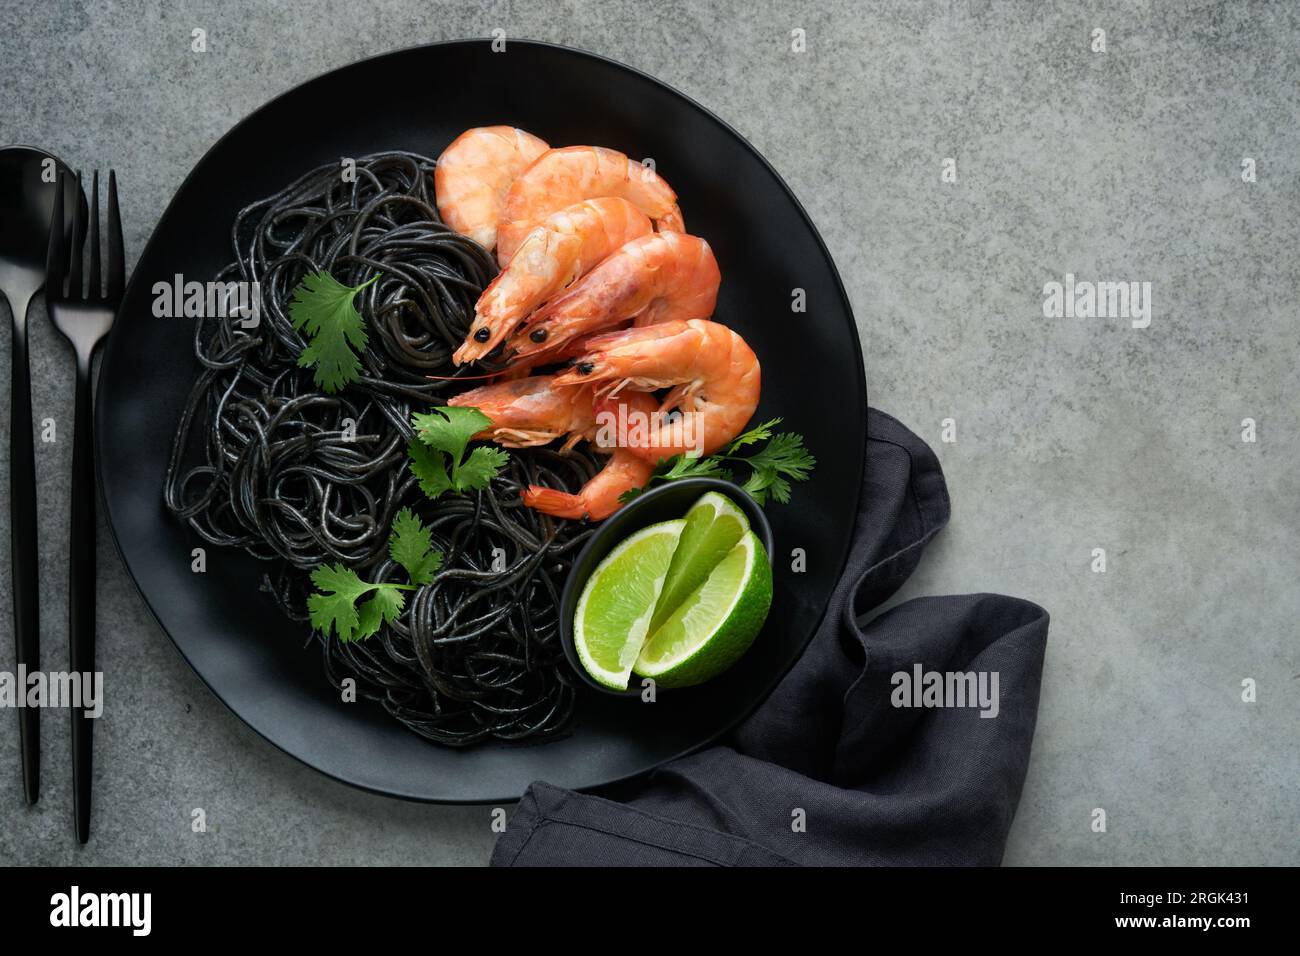 Crevettes noires de pâtes spaghetti sur plaque noire sur fond de table en béton foncé. Pâtes à l'encre de calmar aux crevettes. Pâtes et fruits de mer. Vue de dessus sur l'onglet de pierre grise Banque D'Images